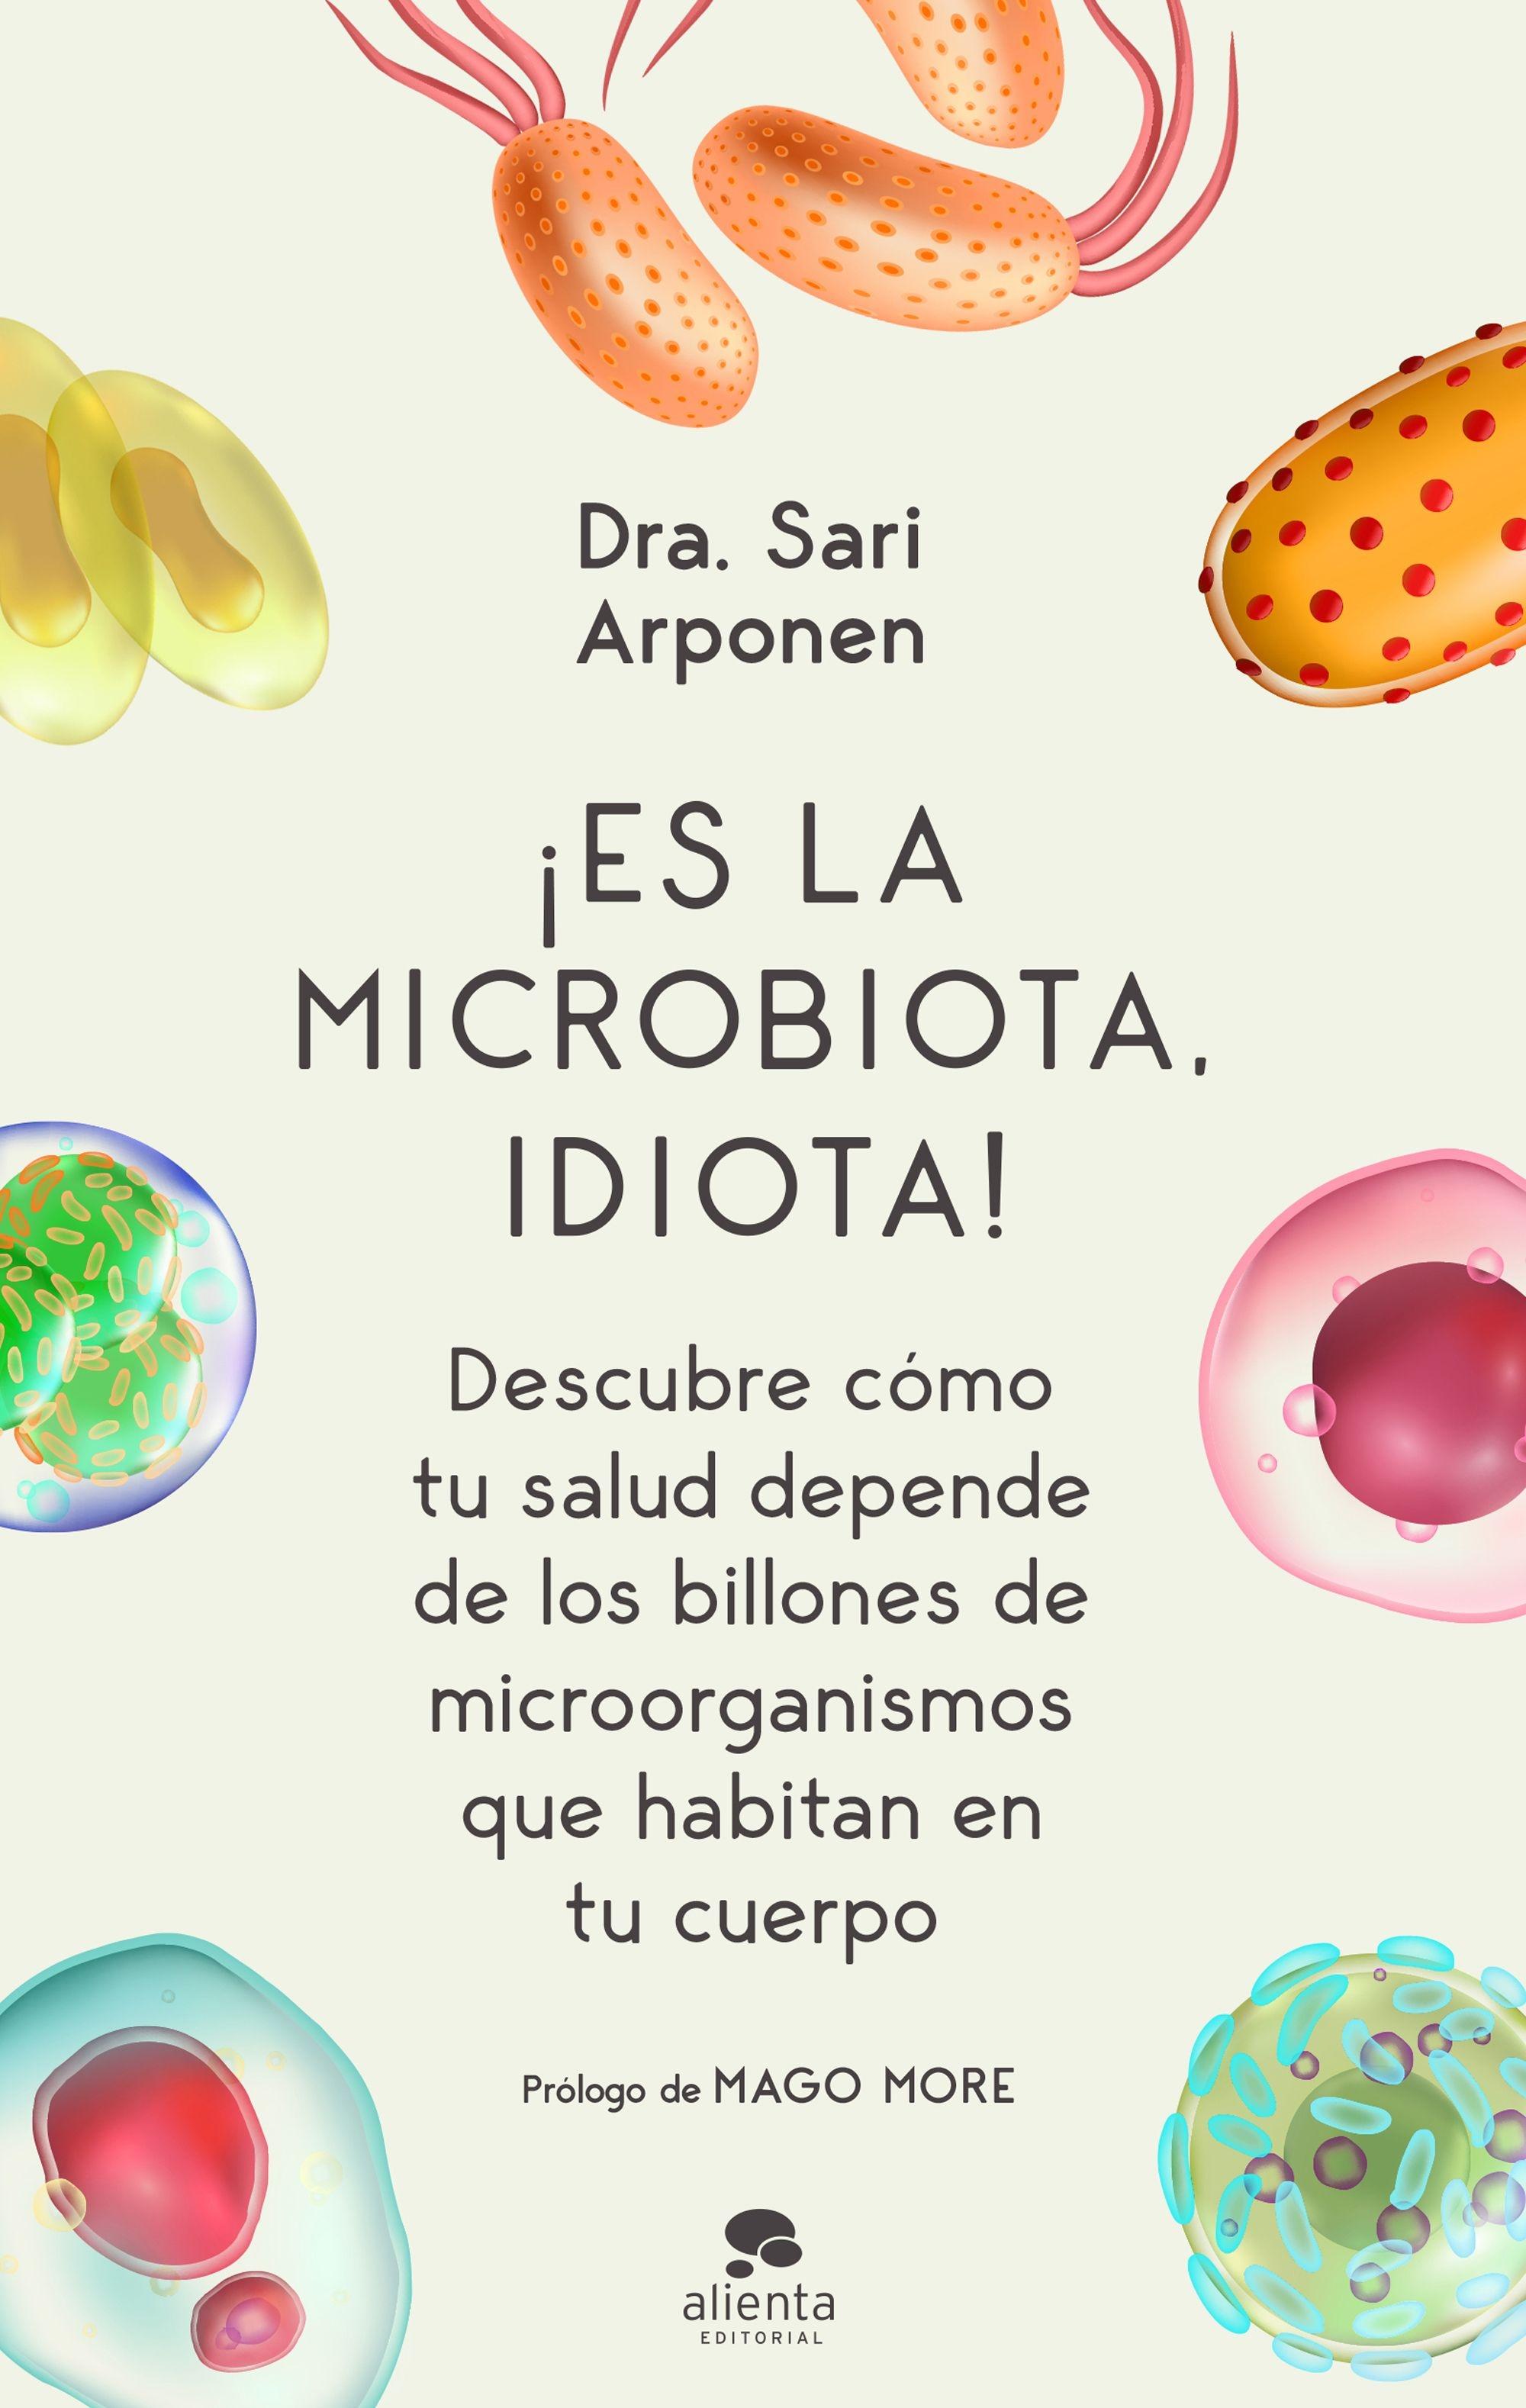 ¡Es la microbiota, idiota! "Descubre cómo tu salud depende de los billones de microorganismos que ha"